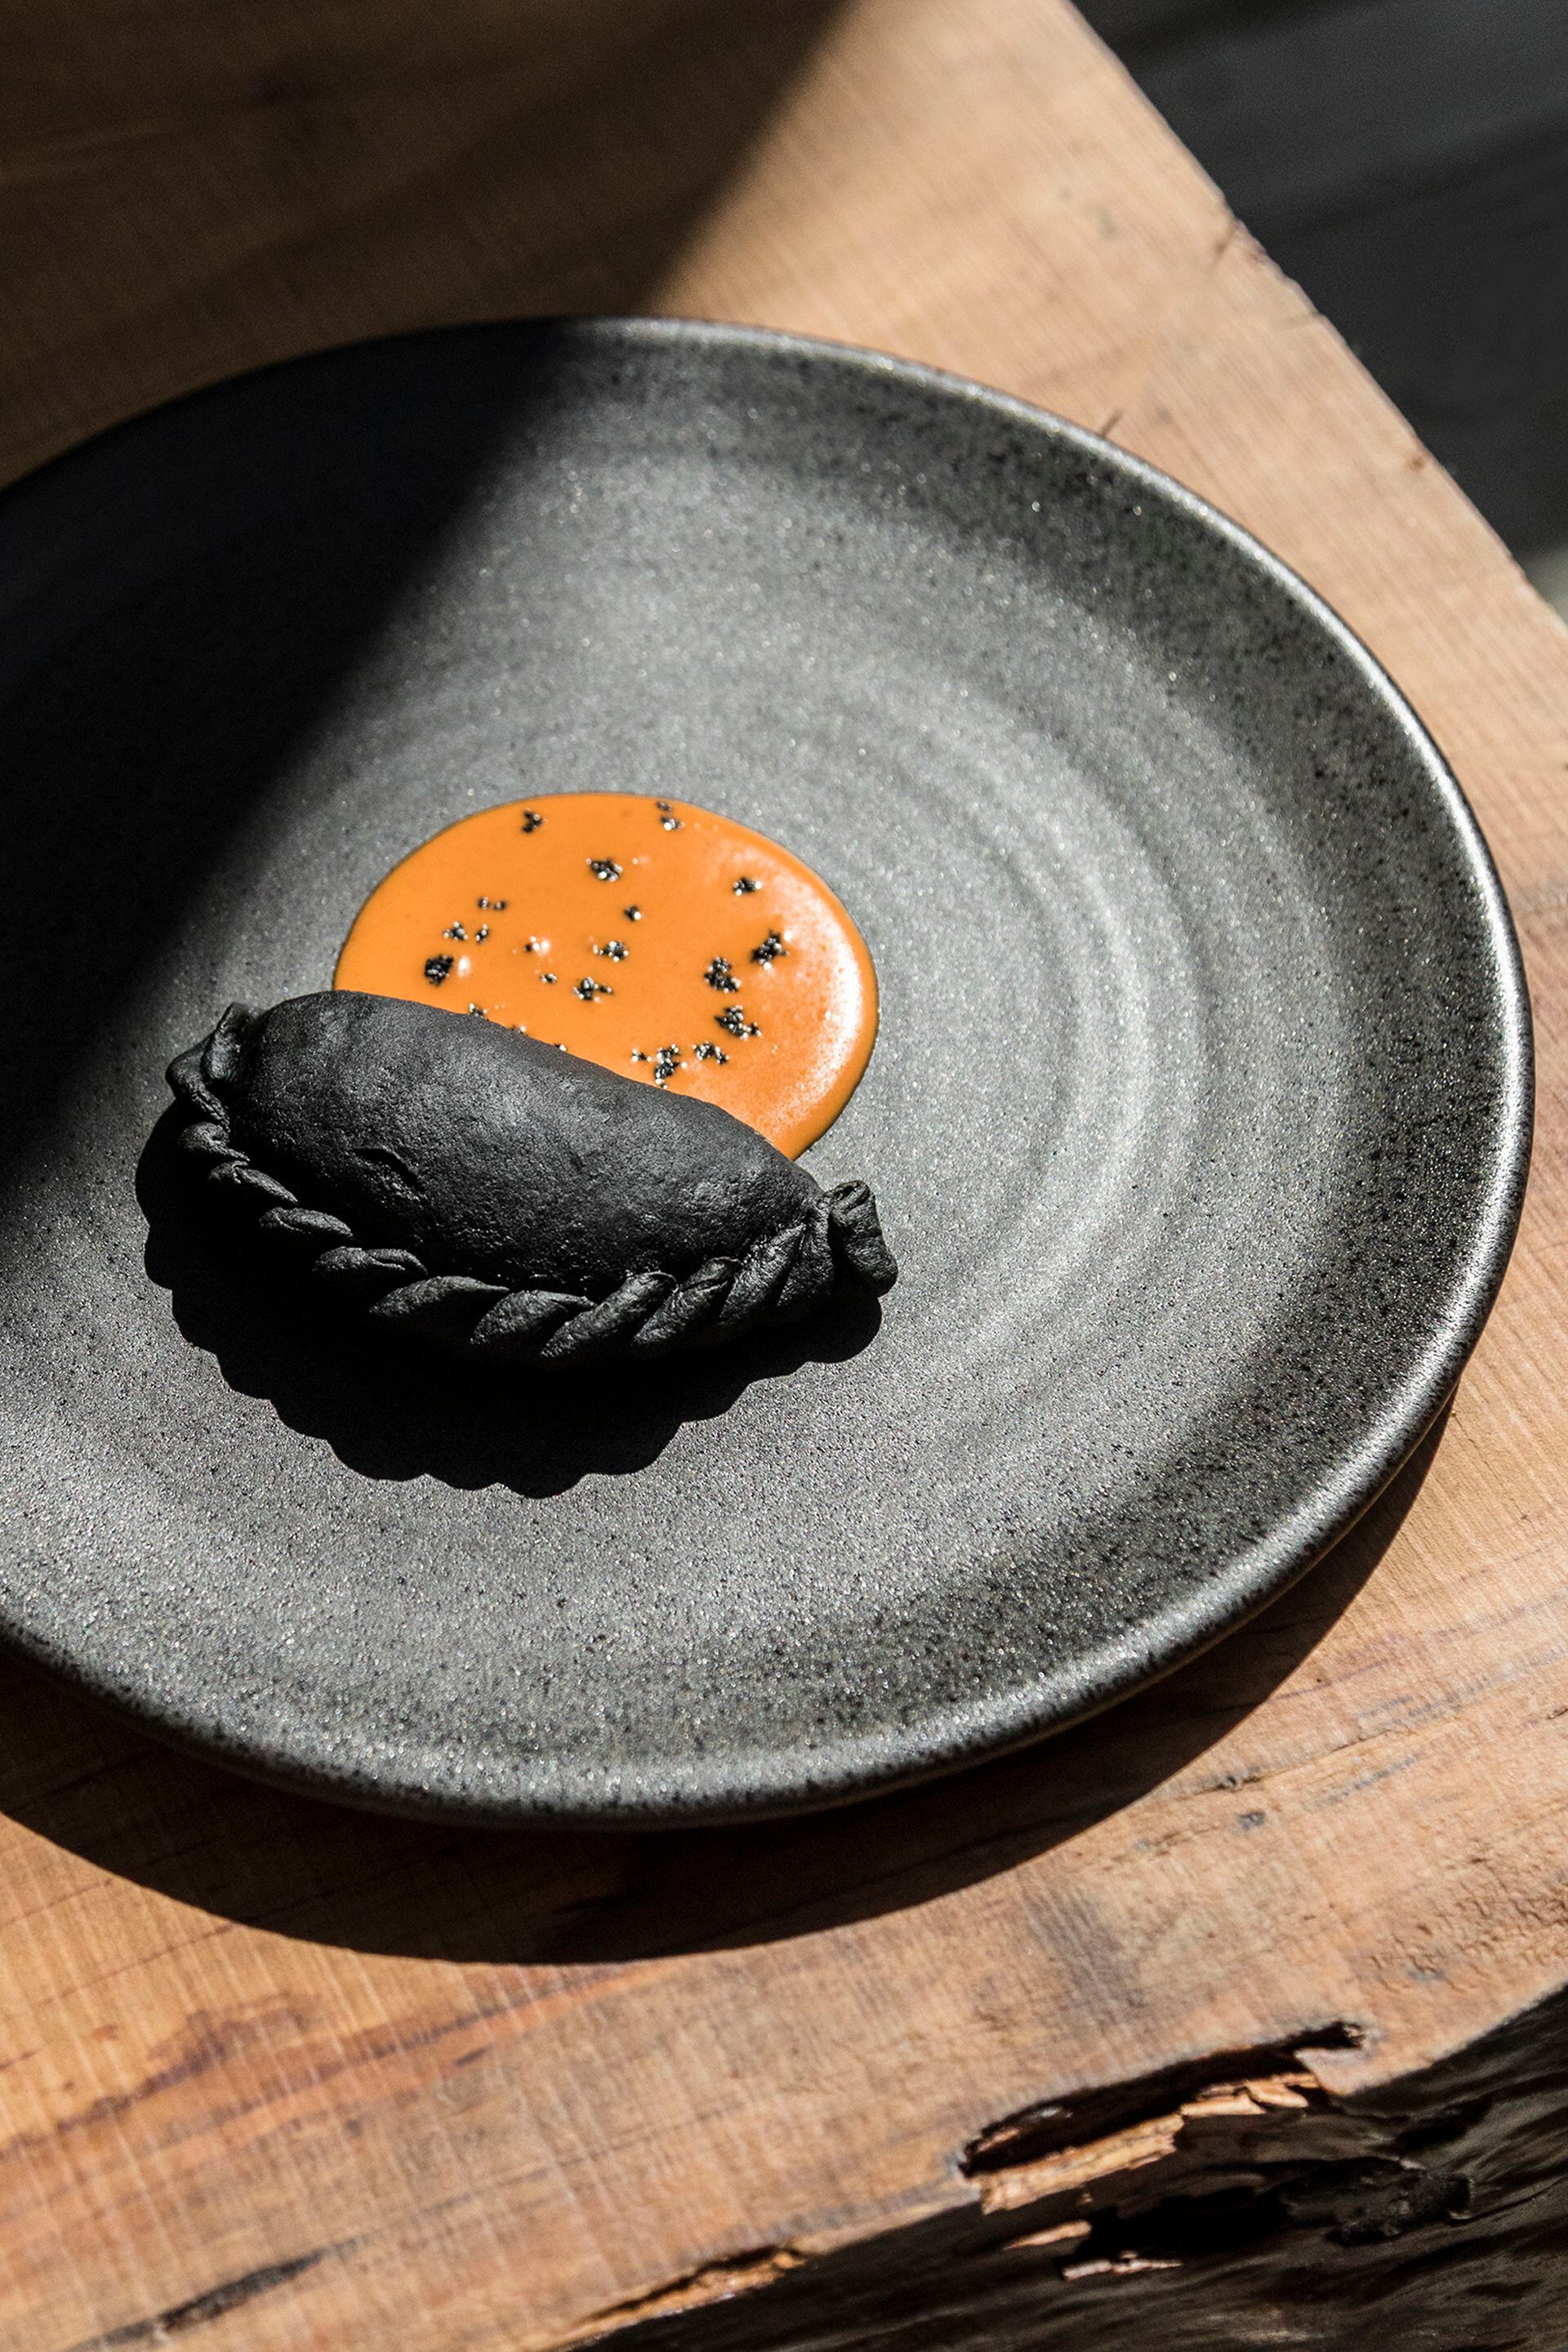 La empanada de carbón de Sacro, uno de sus platos más legendarios y distintivos.